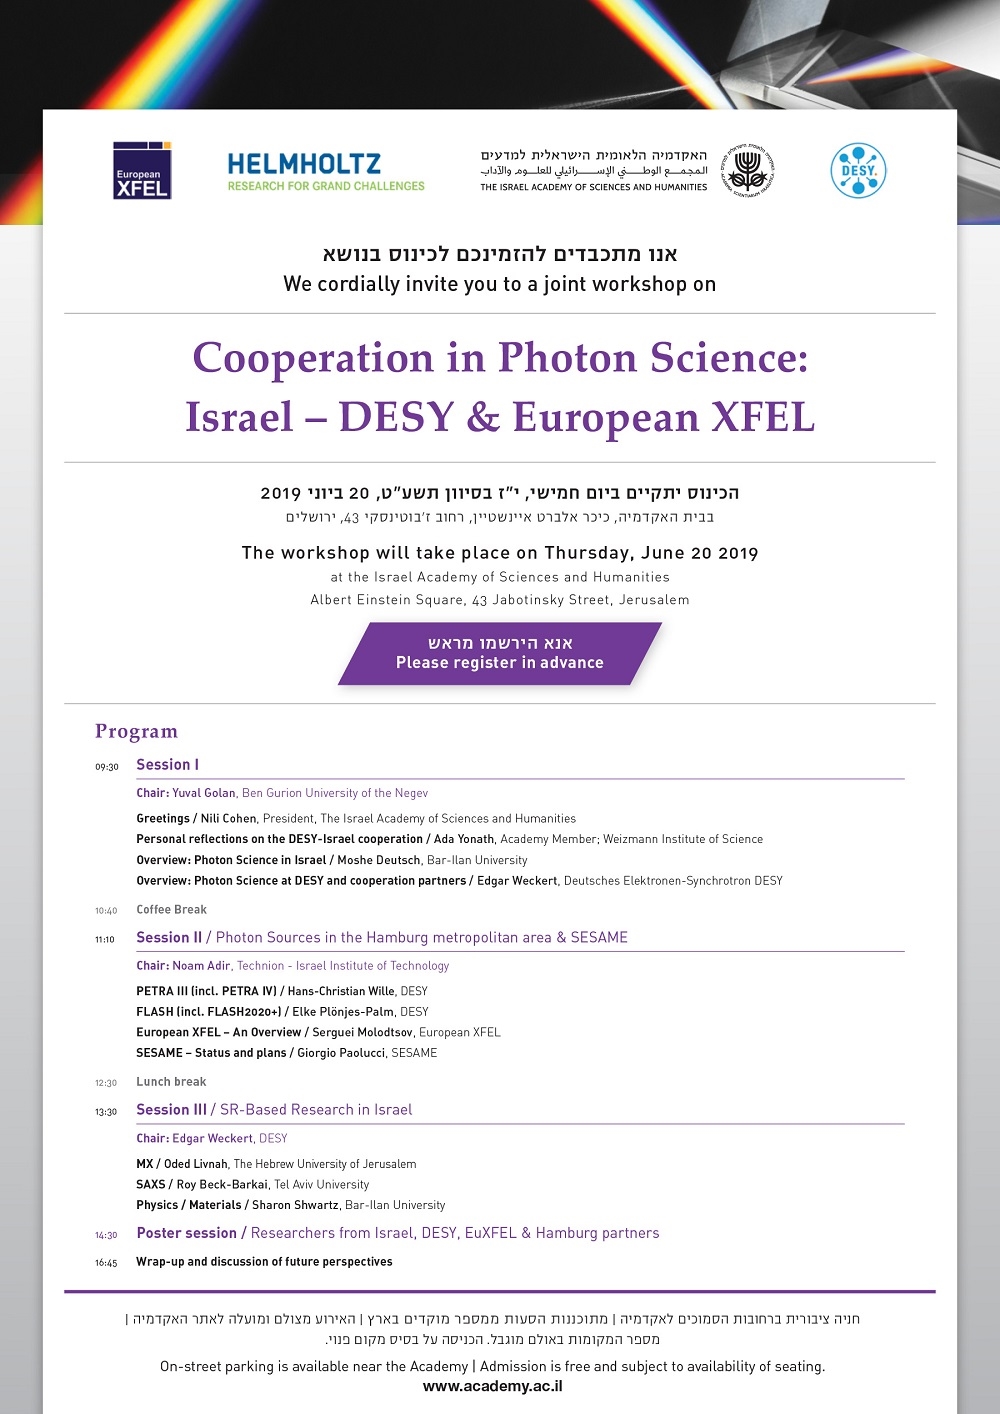 כינוס: Cooperation in Photon Science - Israel-DESY & European XFEL